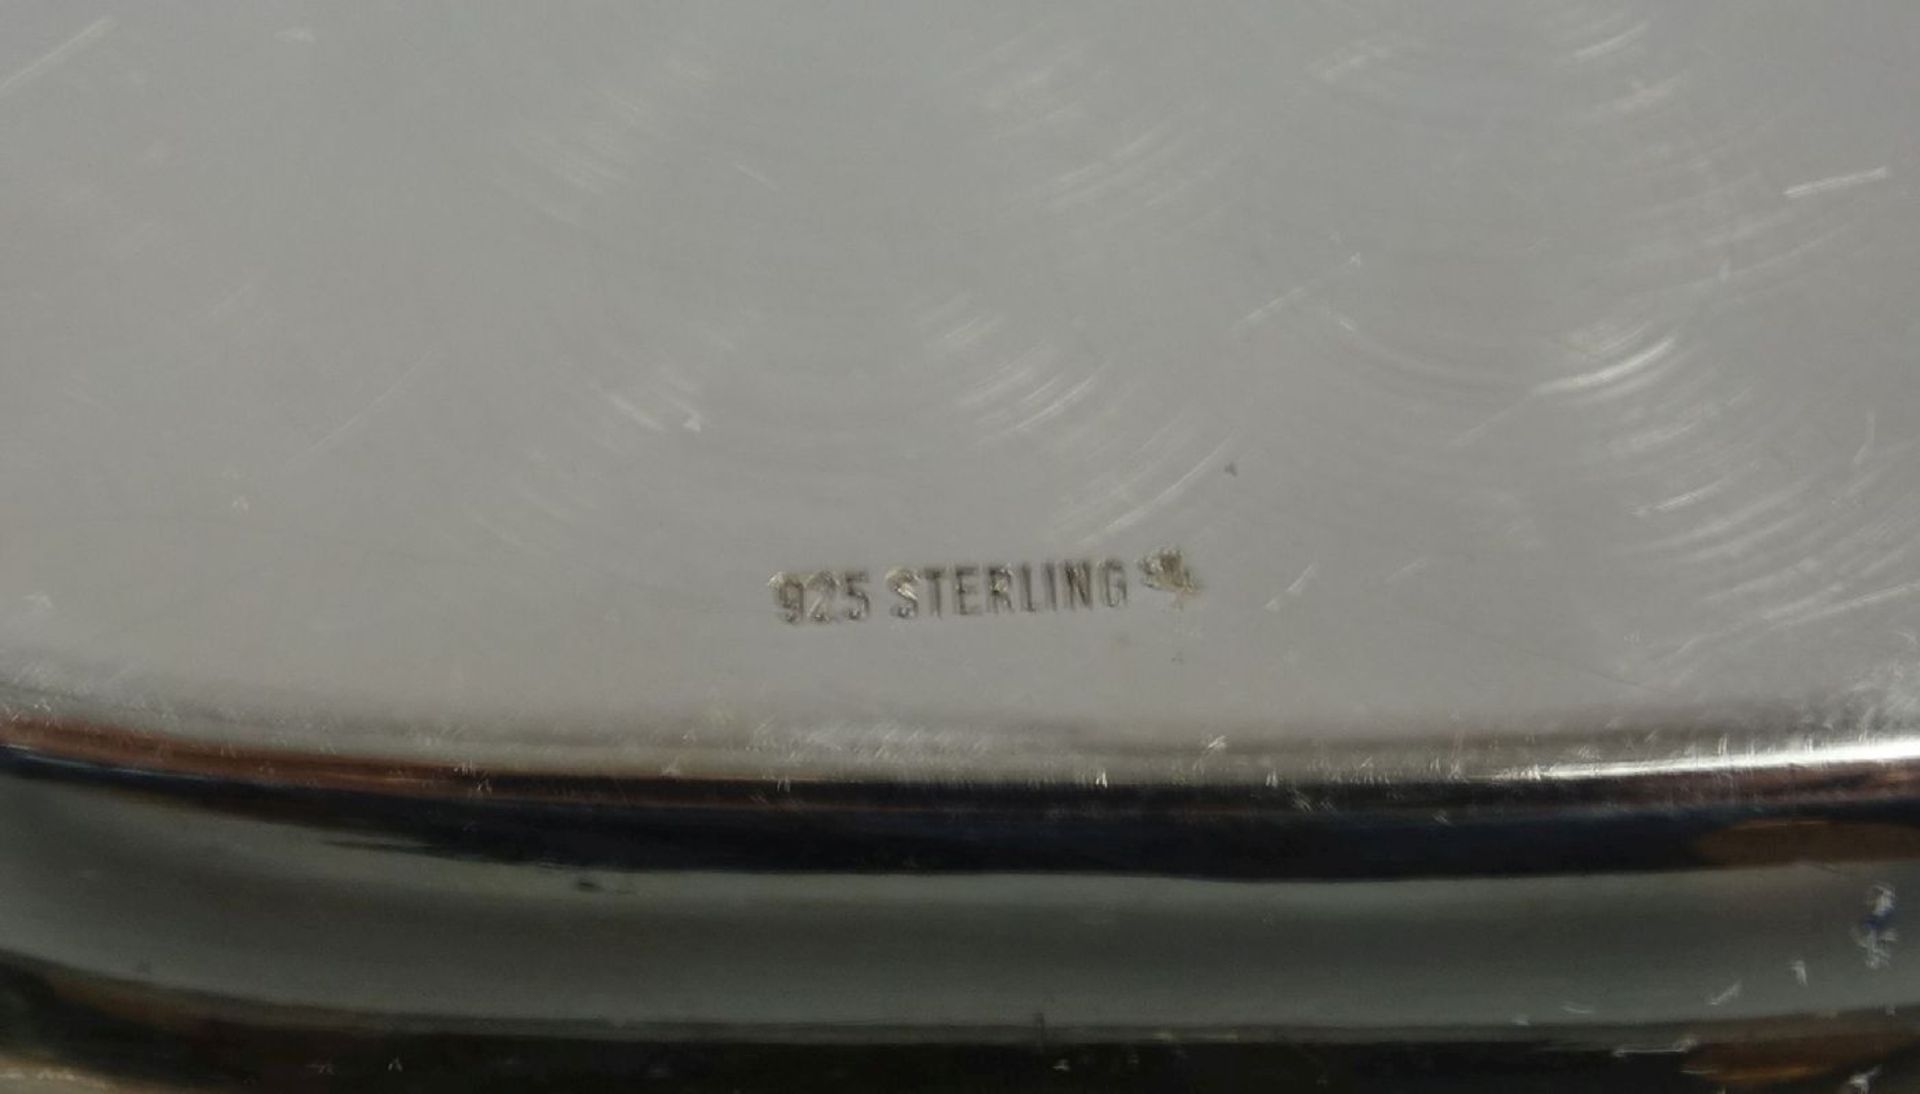 SCHALE / KARREESCHALE / silver bowl, 925er Silber (122 g), bezeichnet "Sterling", gepunzt mit - Bild 2 aus 3